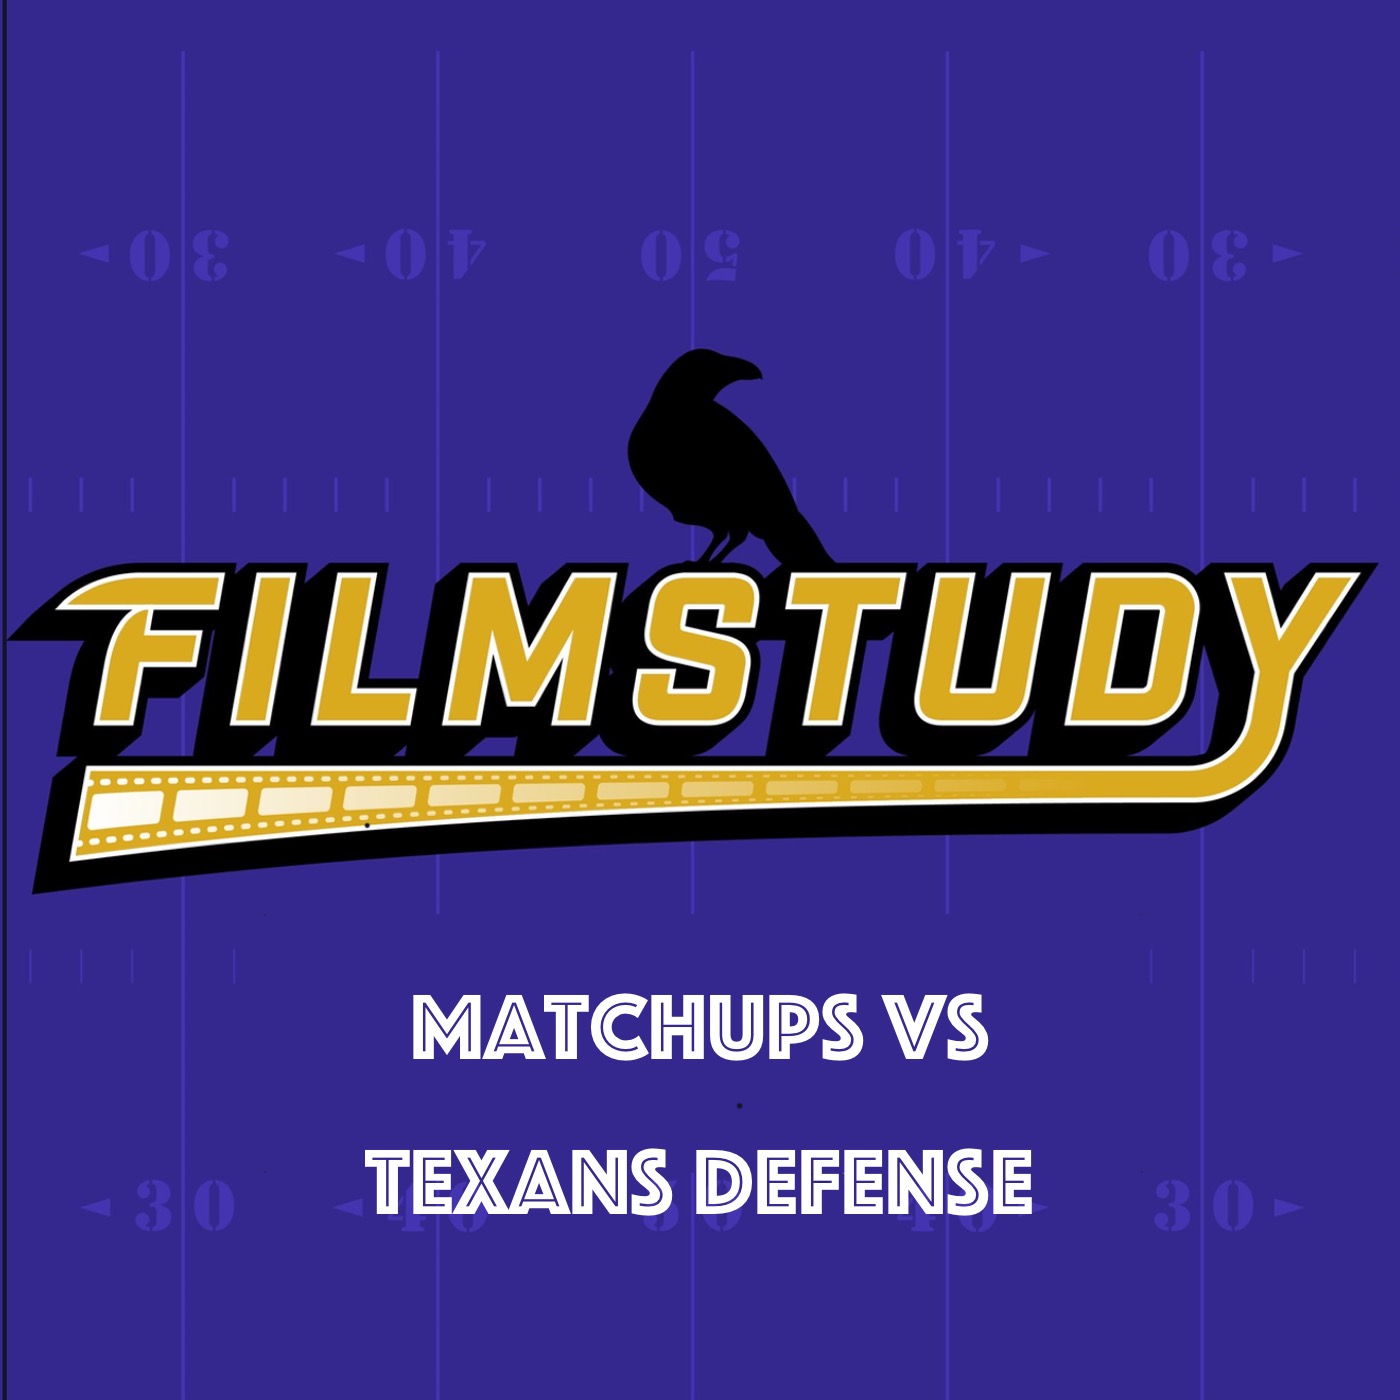 Matchups VS Texans Defense